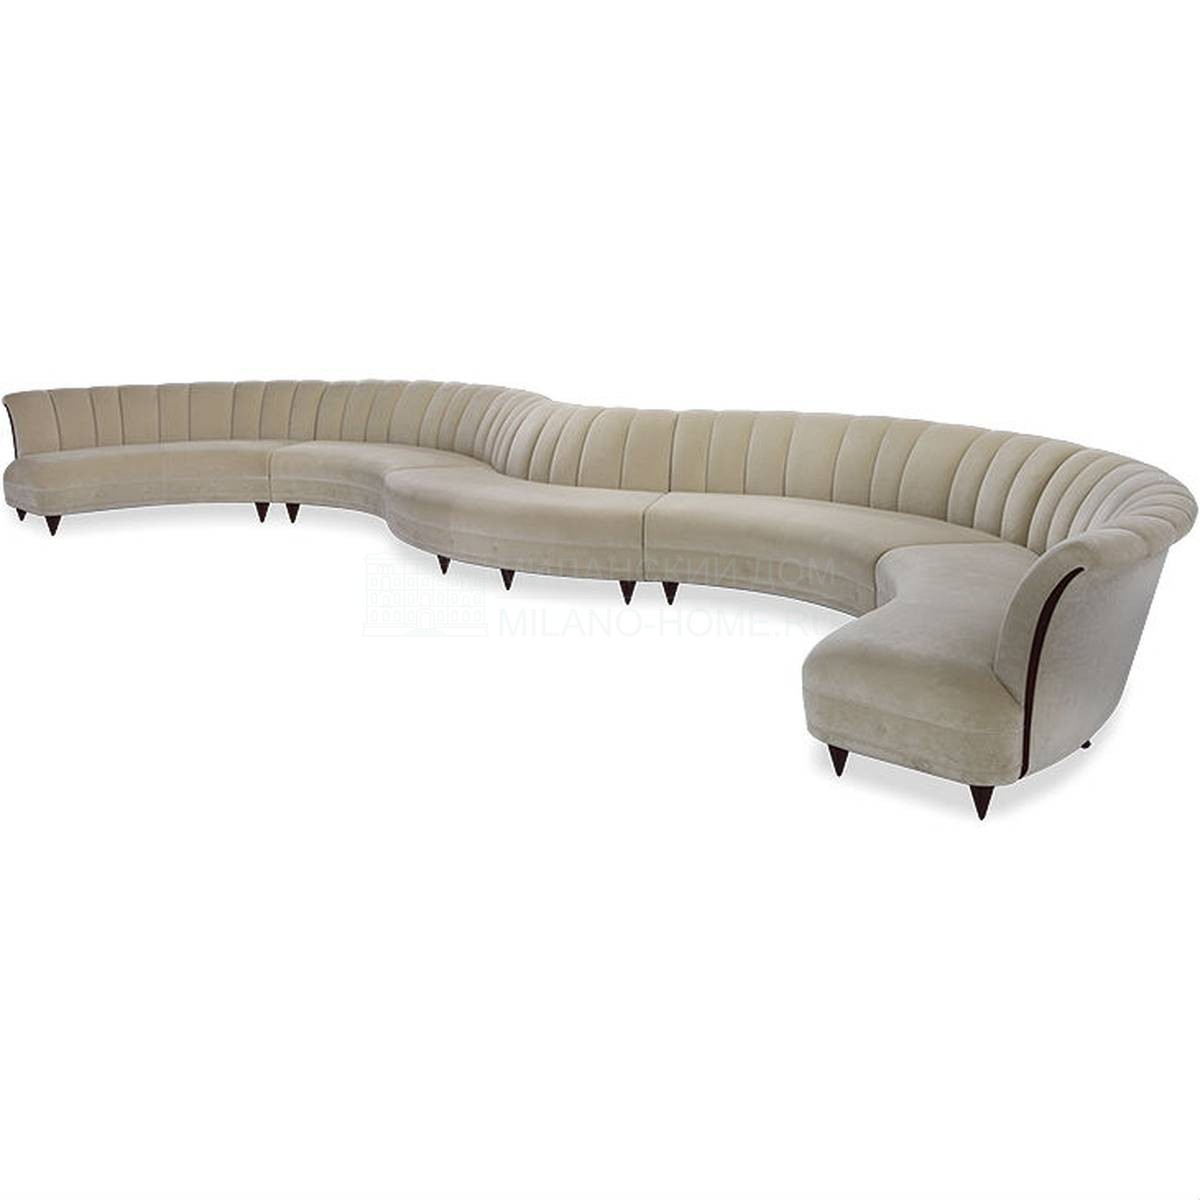 Модульный диван Jumelle sofa из США фабрики CHRISTOPHER GUY